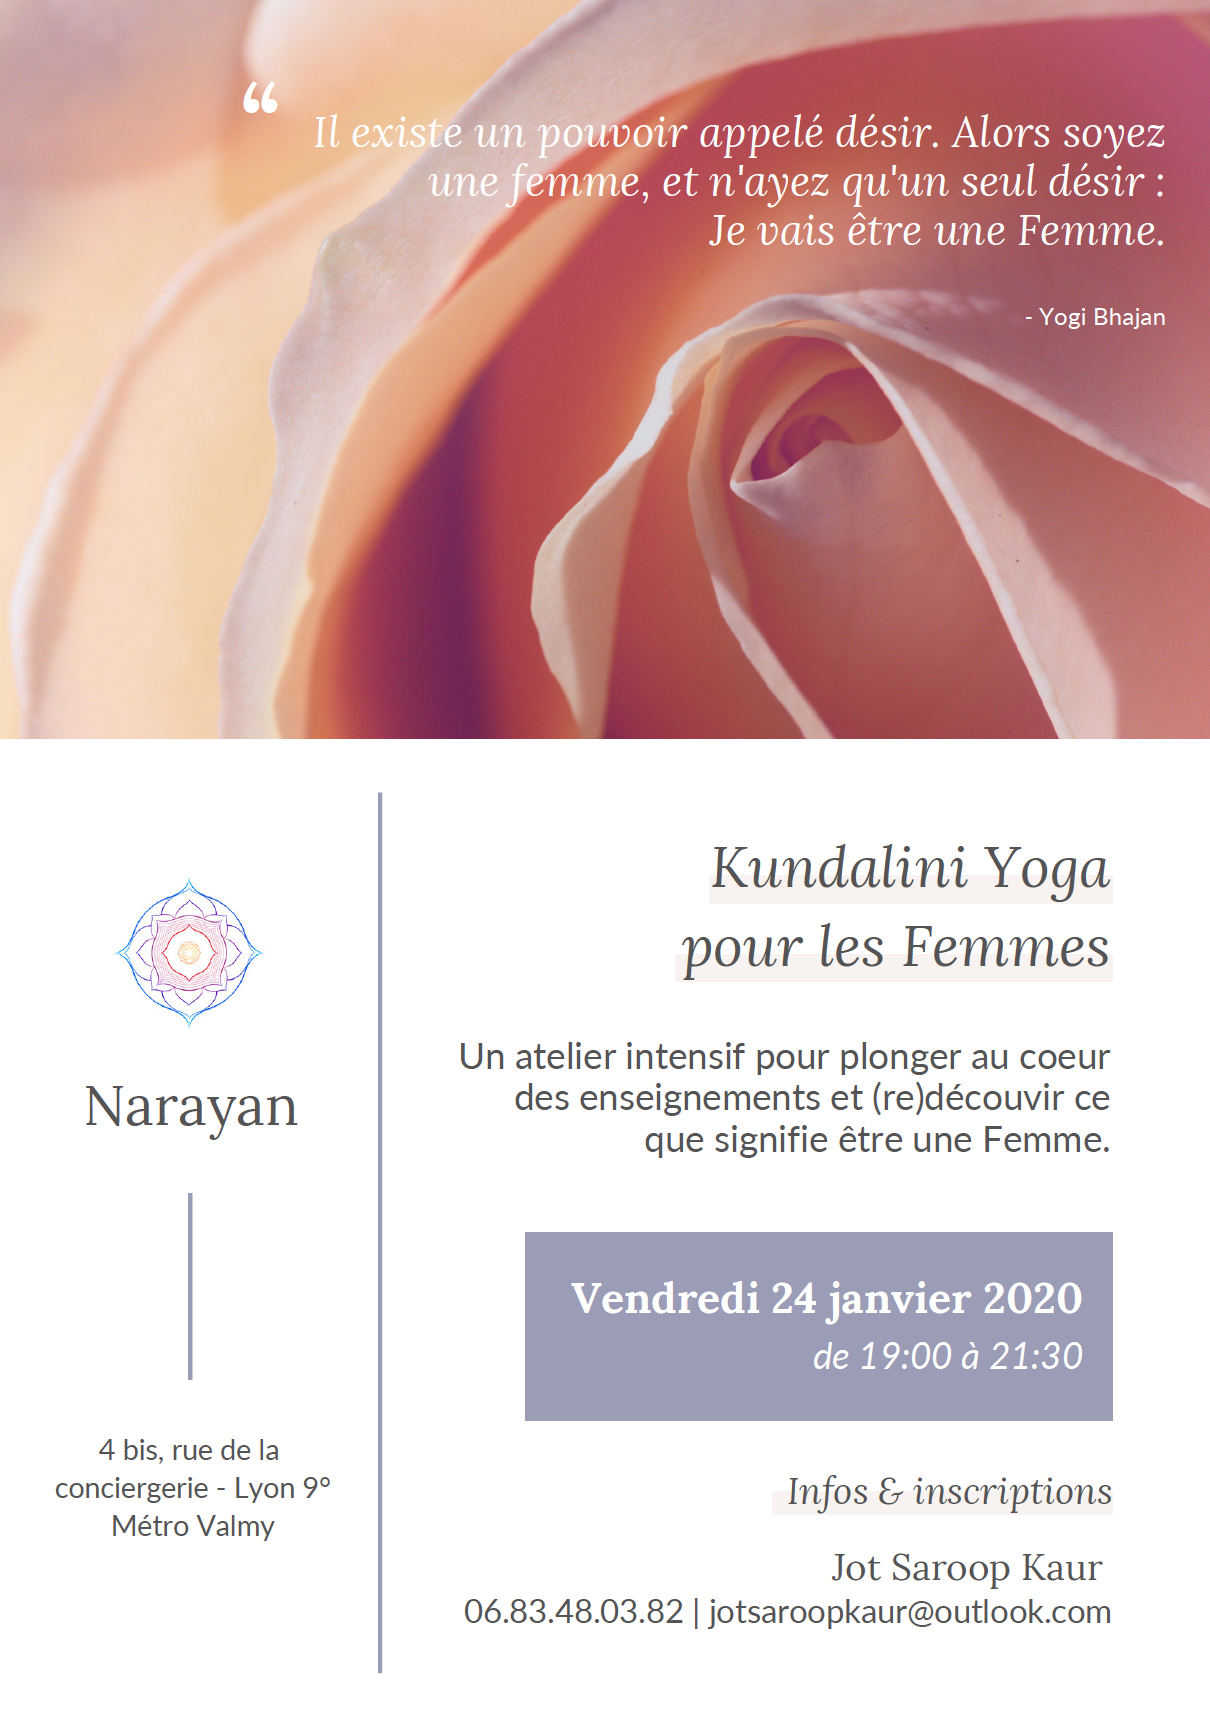 Atelier intensif – Kundalini Yoga pour les femmes